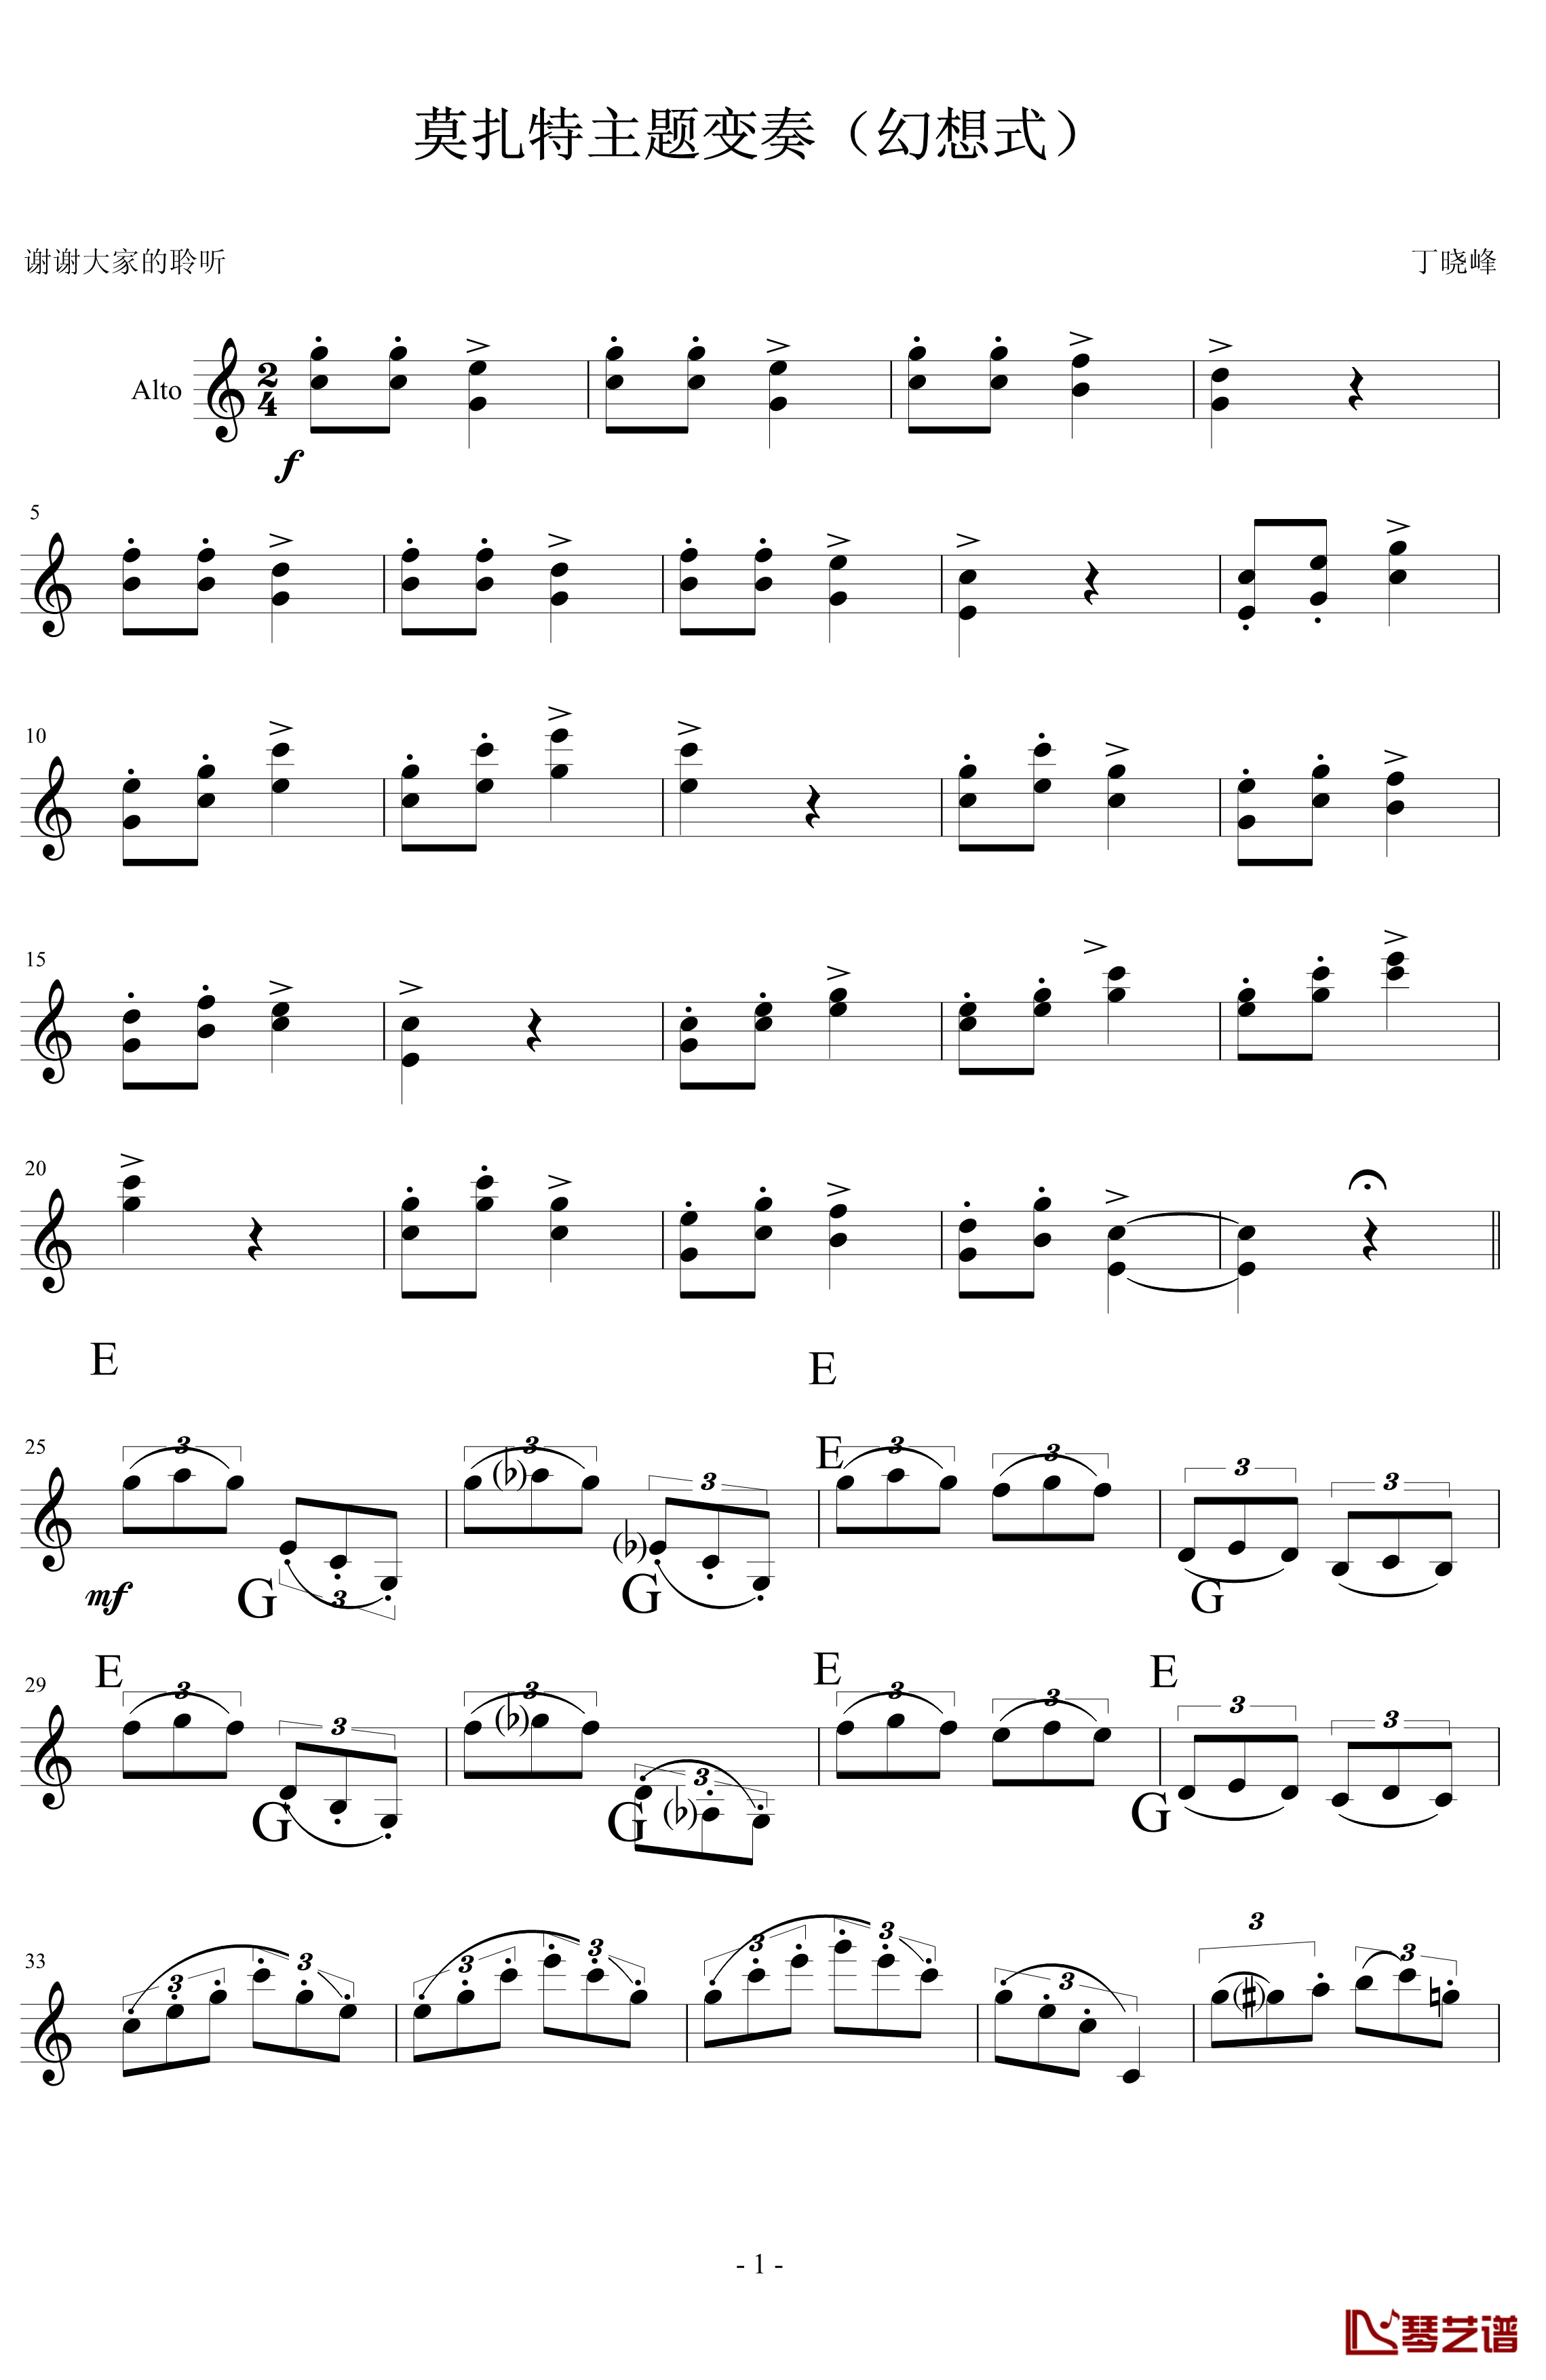 莫扎特主题炫技变奏曲钢琴谱-小提琴版-莫扎特1